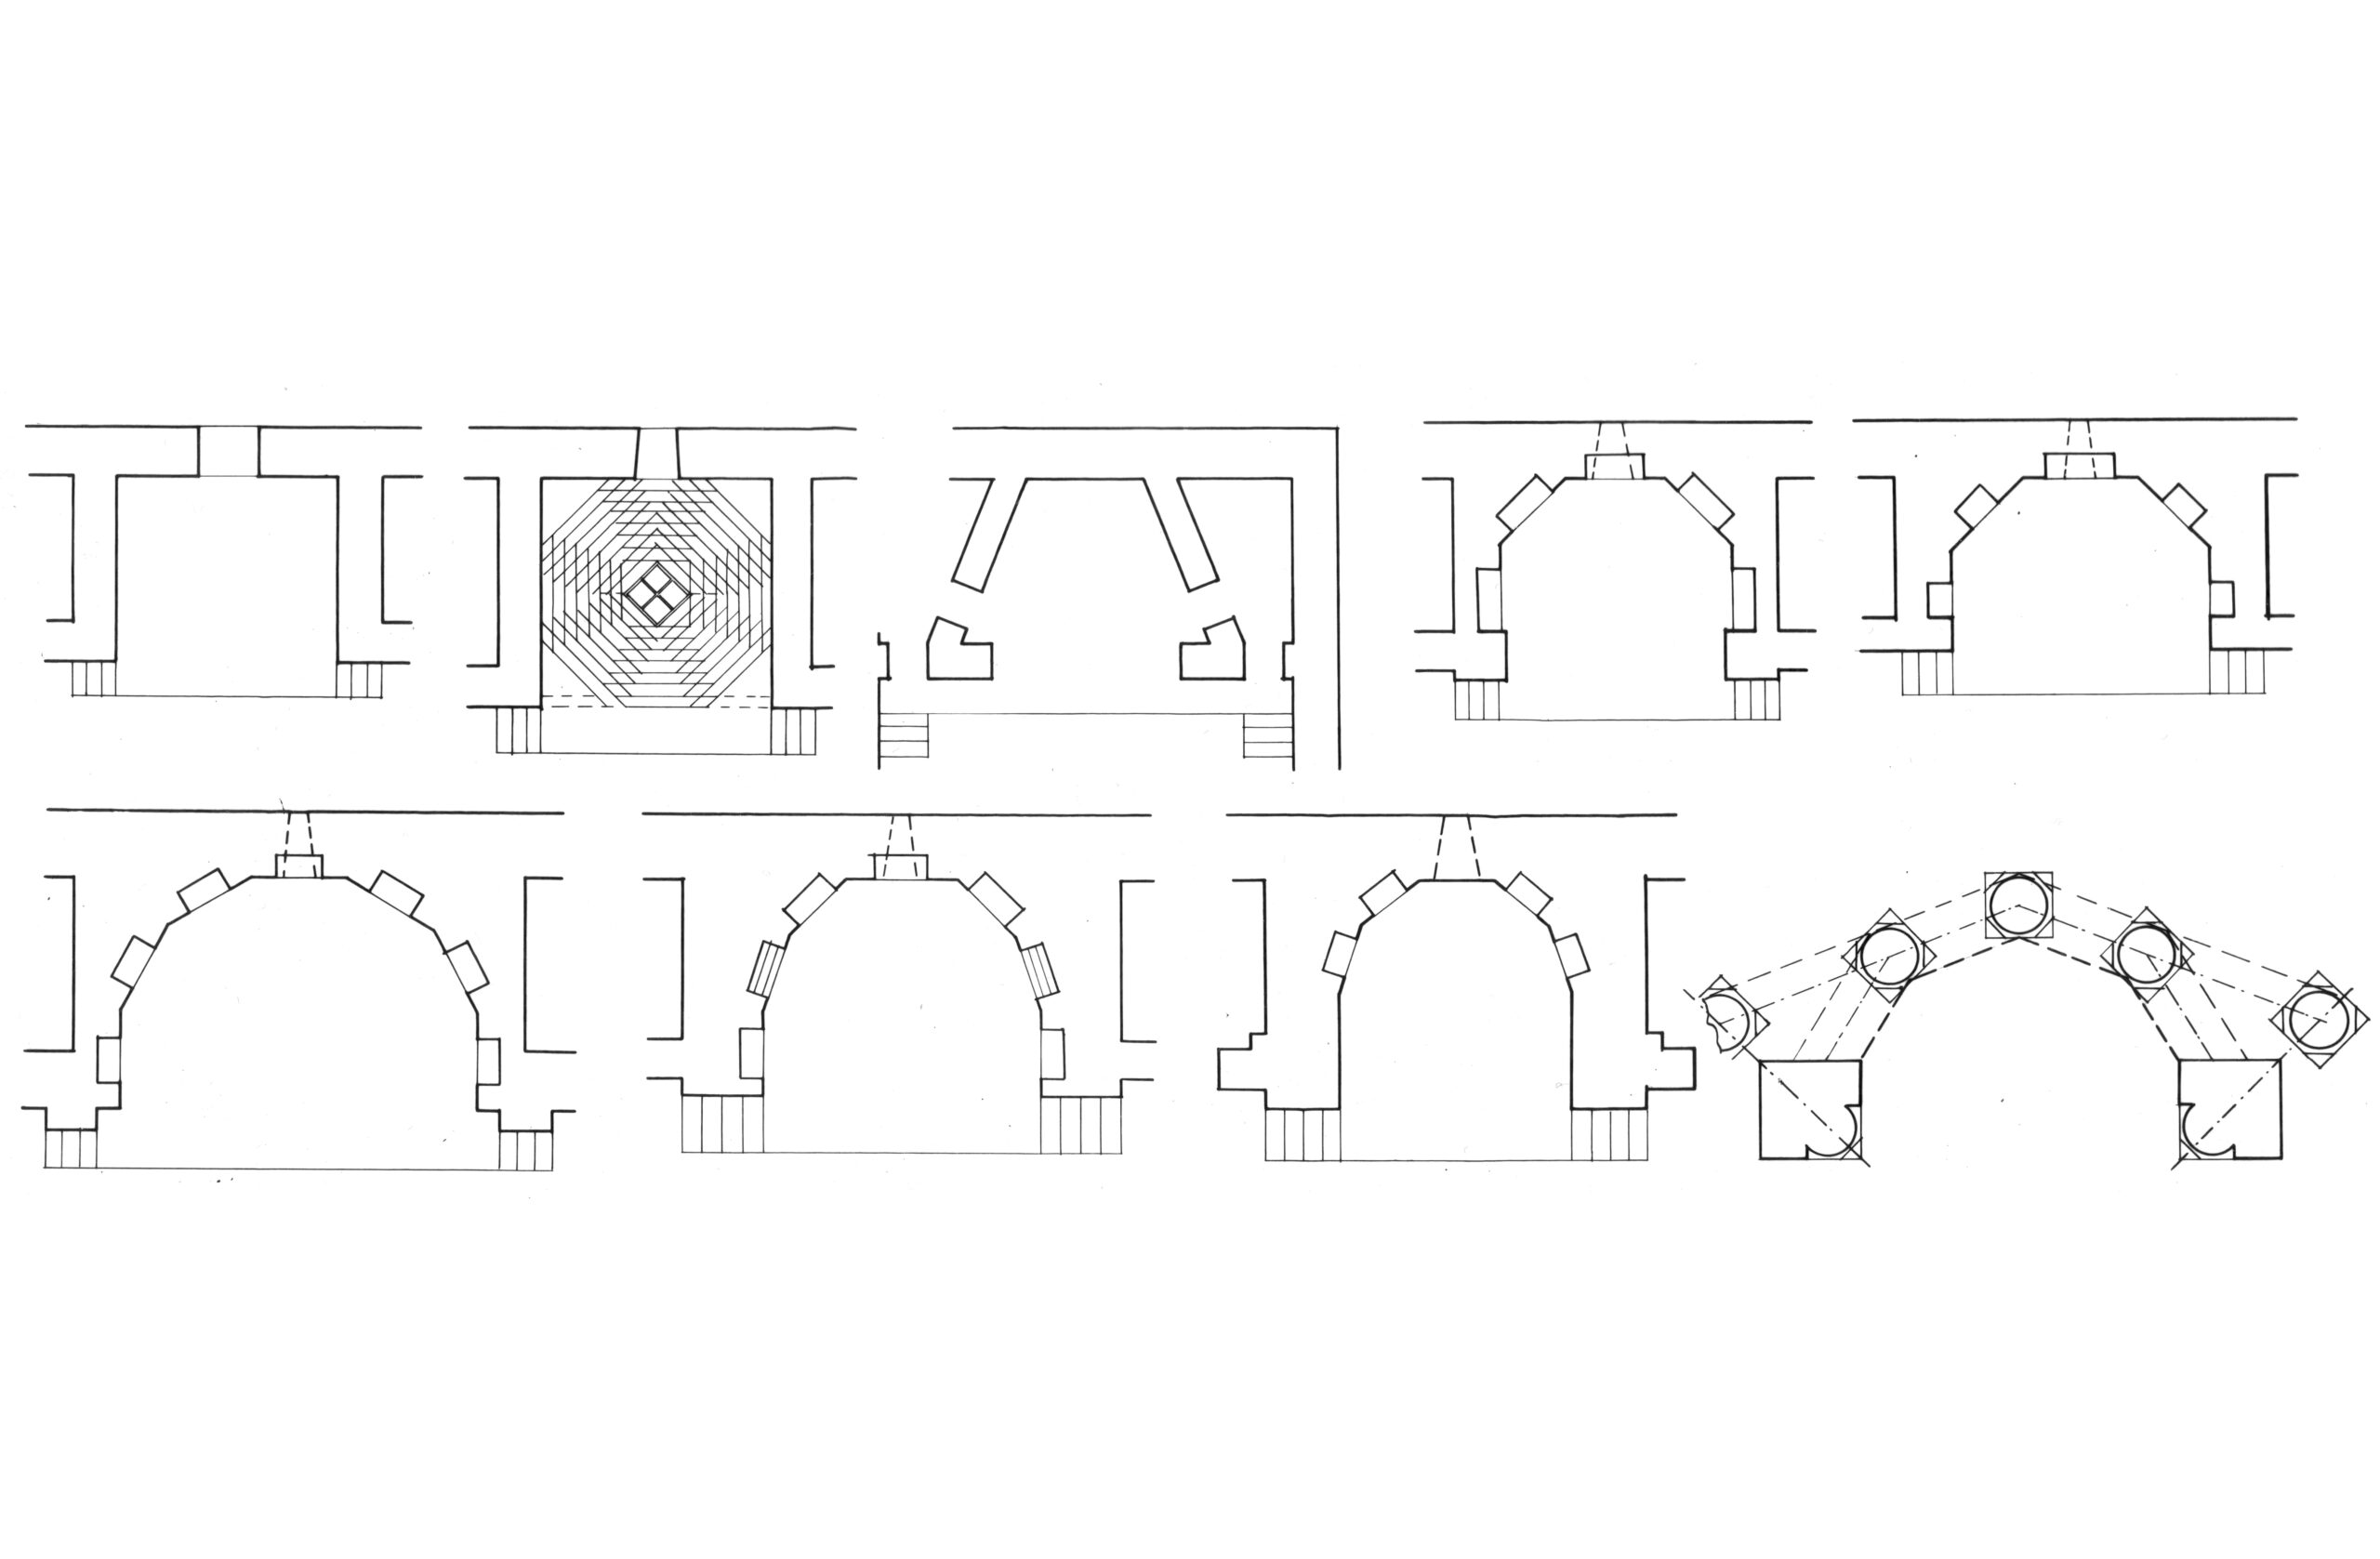 Հայ ճարտարապետության հուշարձաններից մի քանիսի խորանները՝ ուղղանկյուն, քառակուսի, եռանկյունի, հնգանիստ, վեցնիստ, յոթնիստ պարագծերով